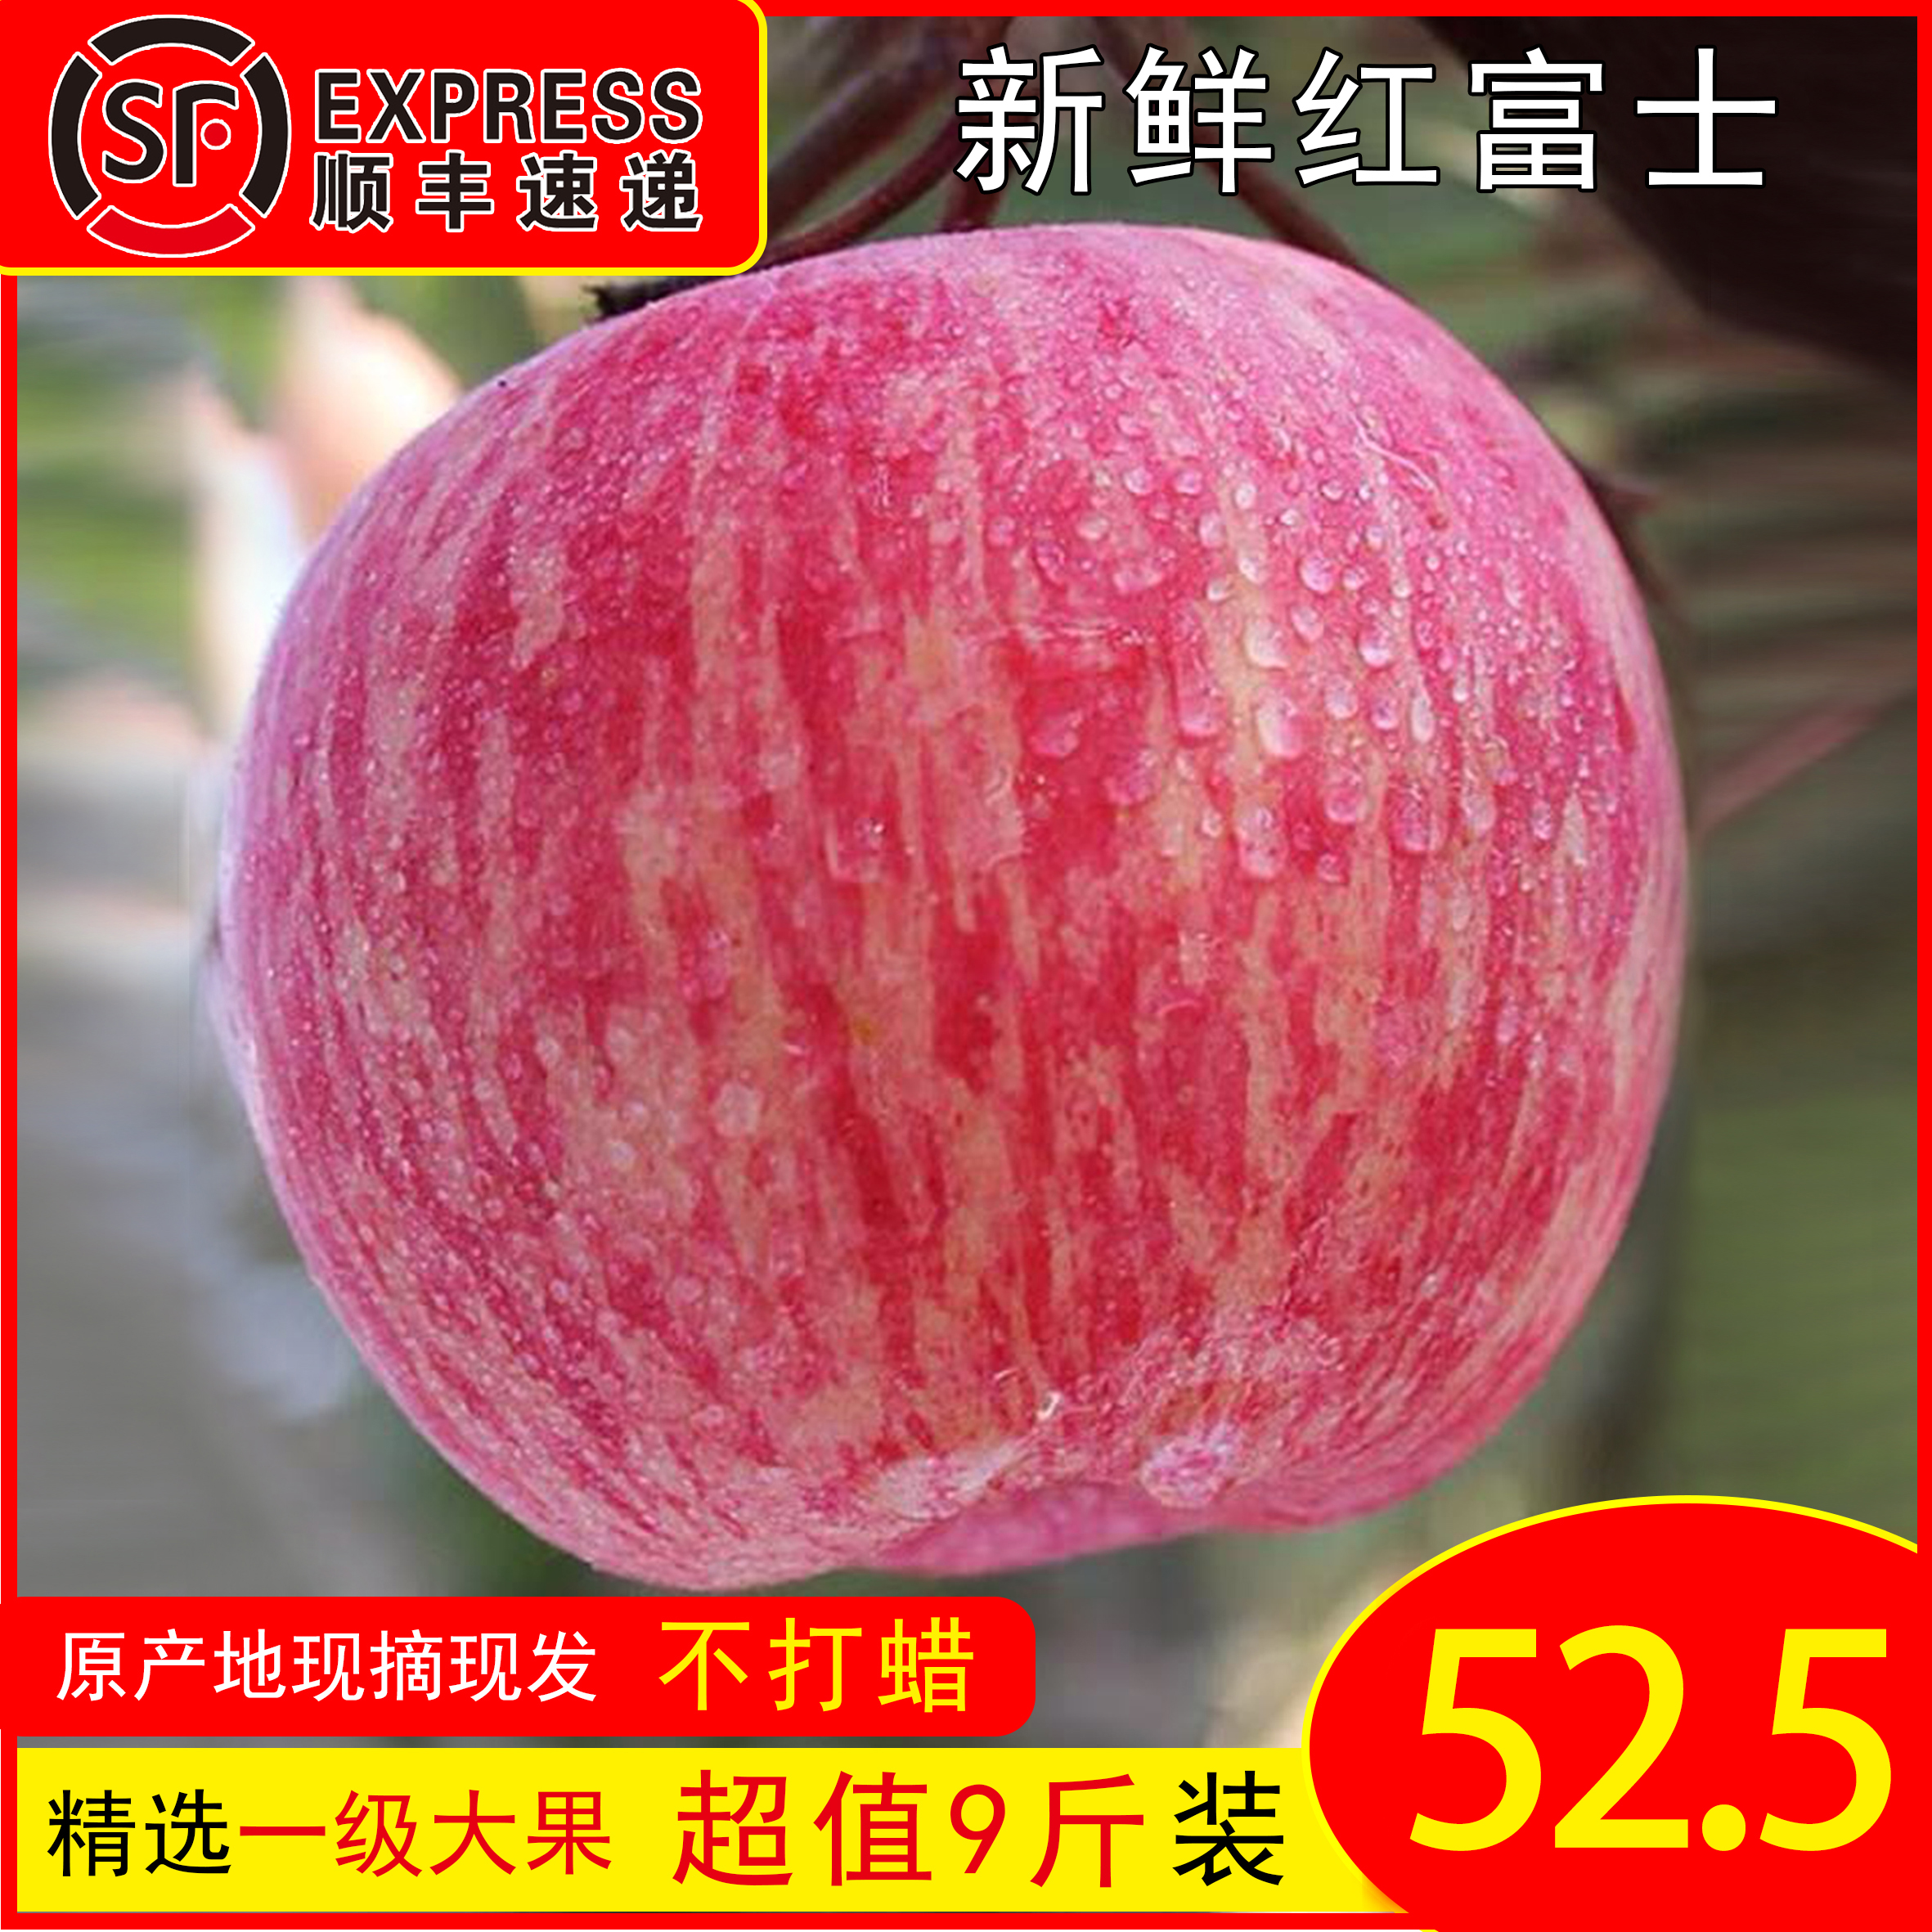 山西吉县壶口瀑布苹果条红富士脆甜多汁应季时令孕妇水果10斤包邮